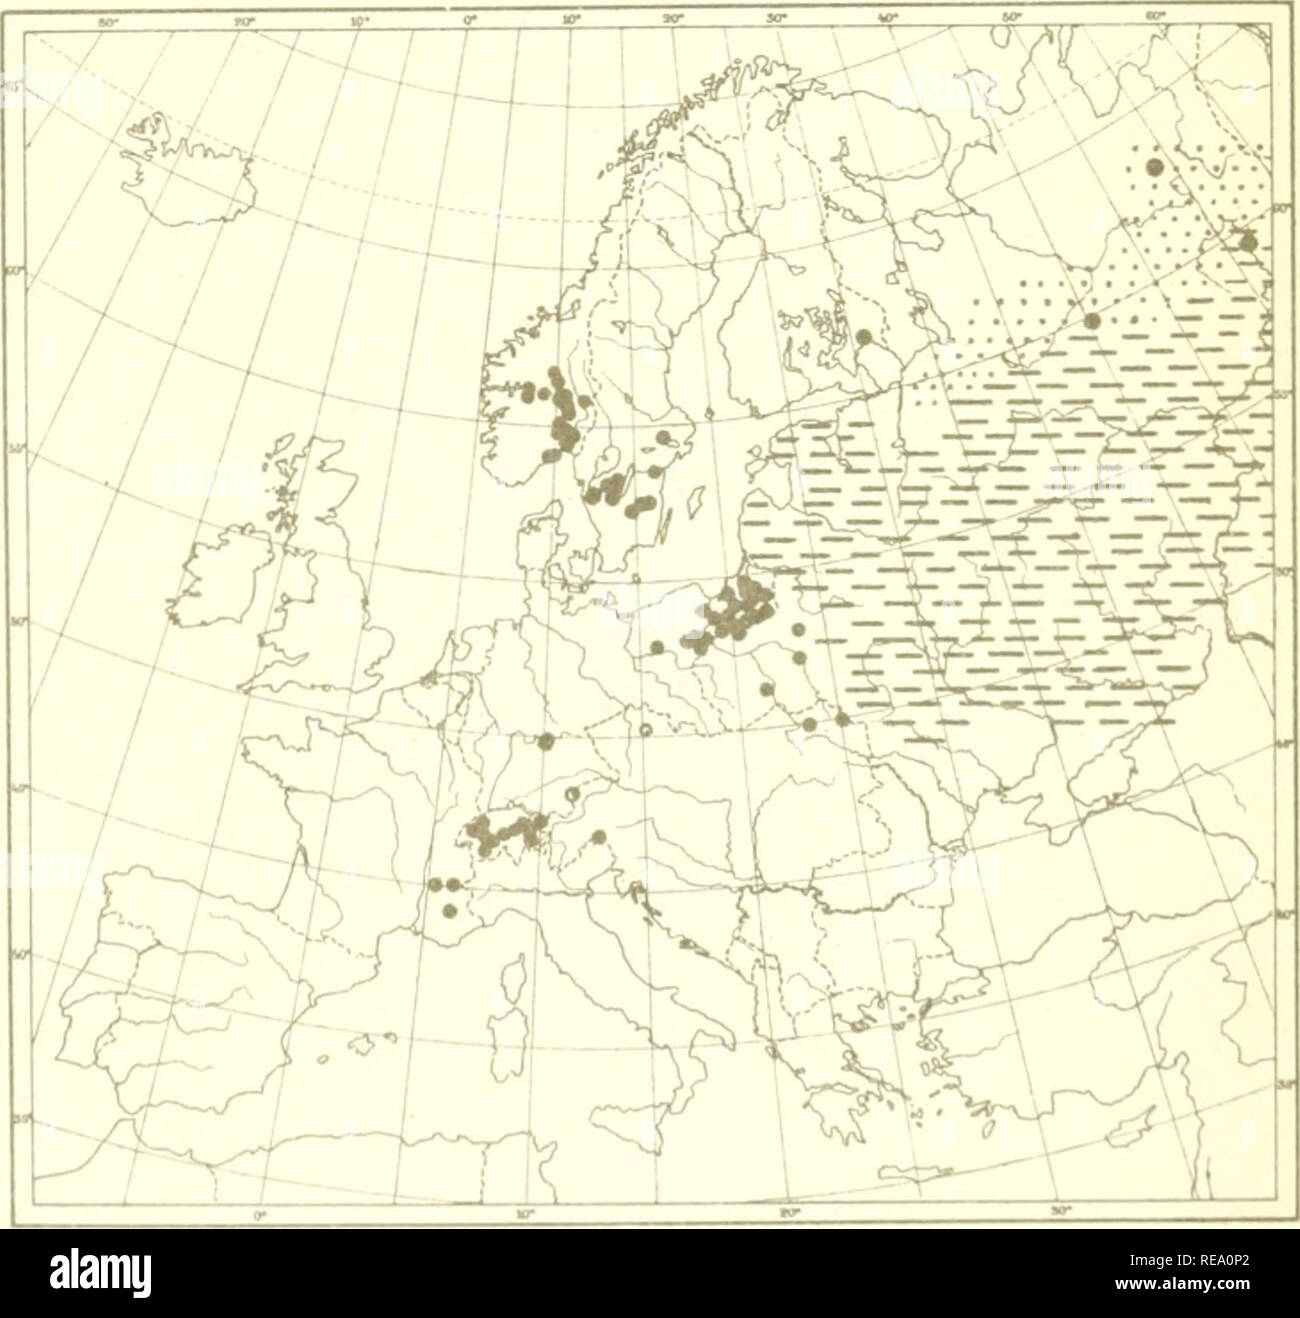 Stockholms Omgifningar STOCKHOLM ENVIRONS BAEDEKER 1899 map Sweden karta 